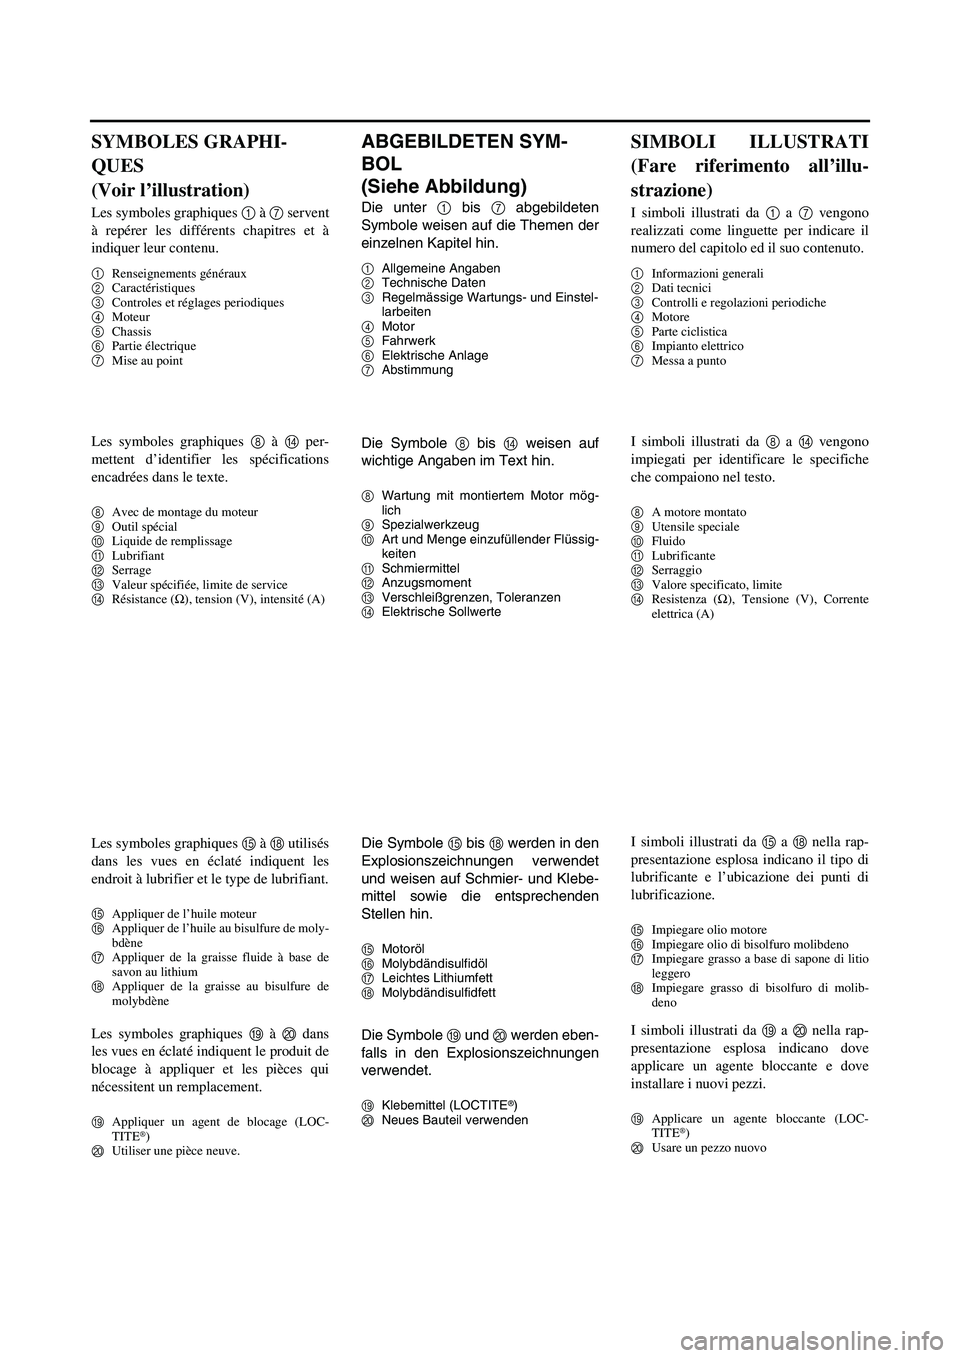 YAMAHA YZ250F 2007  Notices Demploi (in French) ABGEBILDETEN SYM-
BOL 
(Siehe Abbildung)
Die unter 1 bis 7 abgebildeten
Symbole weisen auf die Themen der
einzelnen Kapitel hin.
1Allgemeine Angaben
2Technische Daten
3Regelmässige Wartungs- und Eins